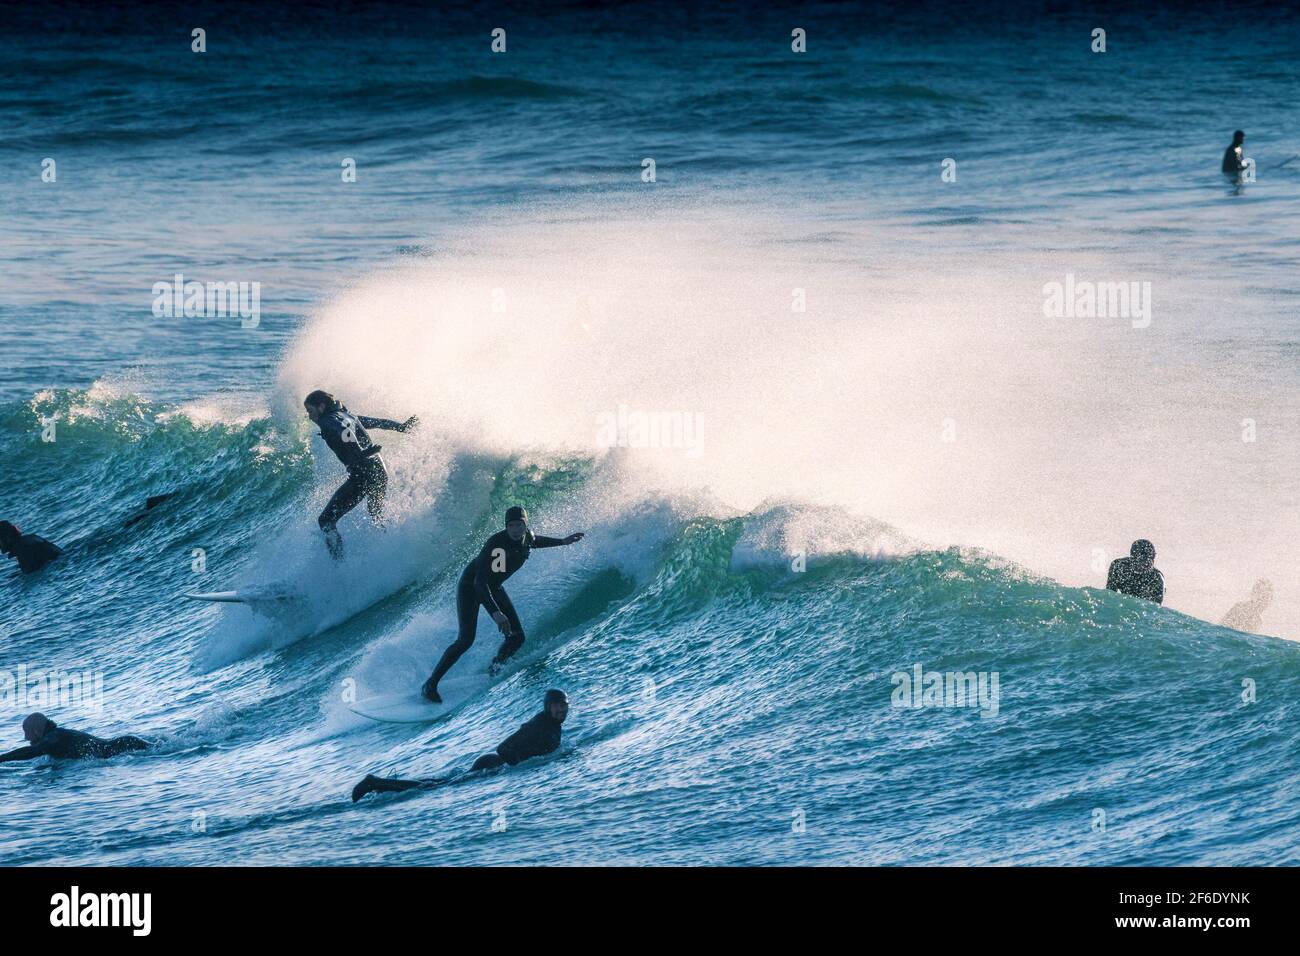 Spektakuläre Surfing-Action, wenn Surfer eine Welle reiten, wobei der Spray von starken Offshore-Winden im Fistral in Newquay in Cornwall geblasen wird. Stockfoto